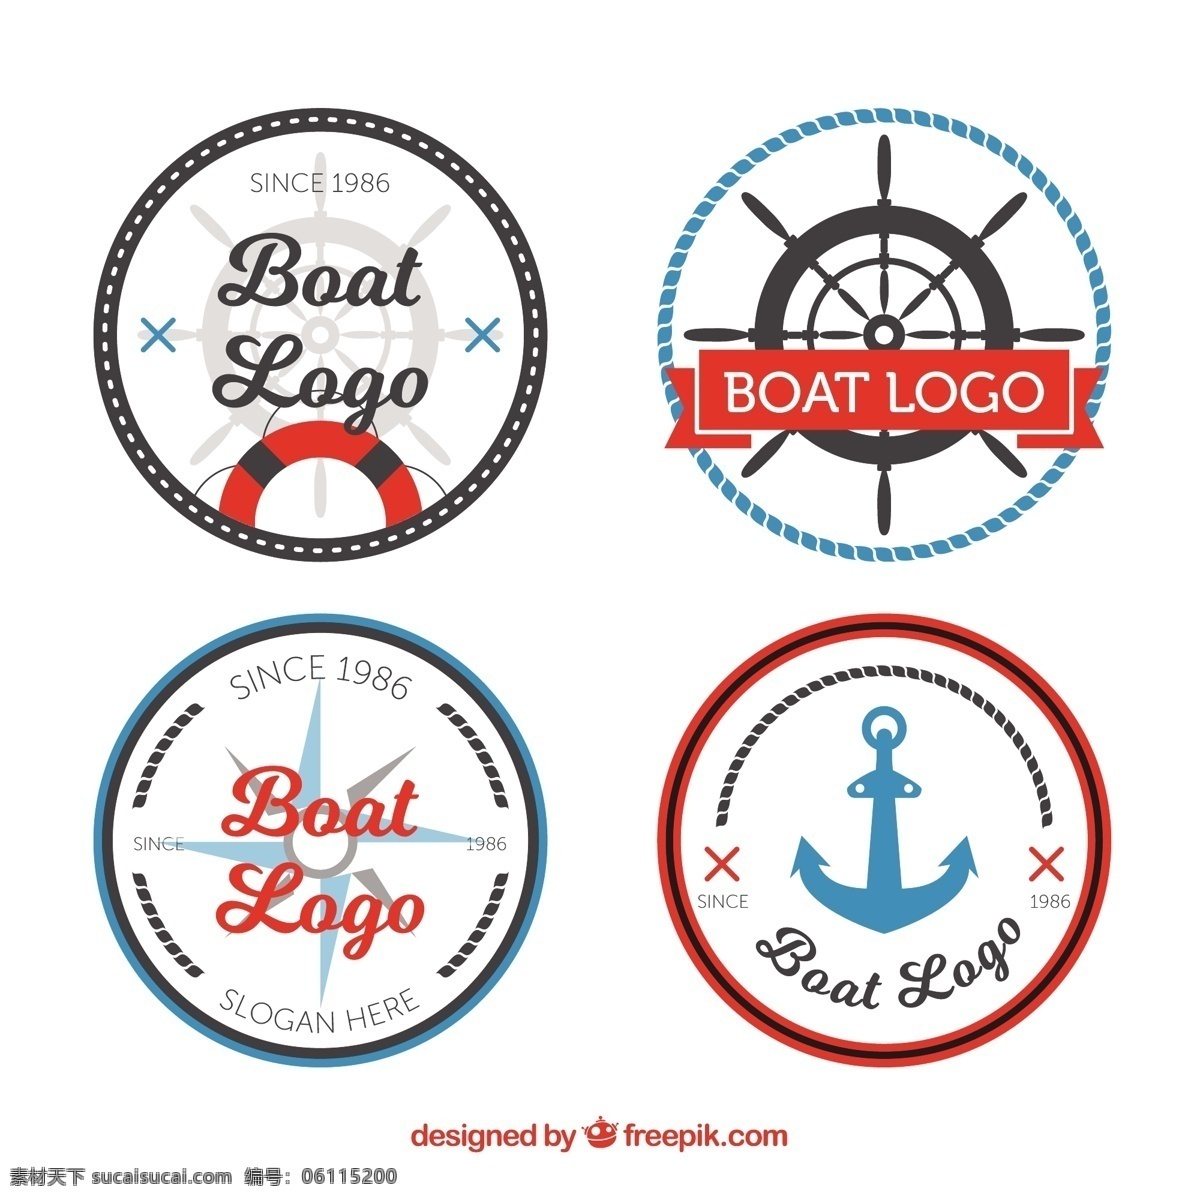 四航海标志集 标志 企业 贴纸 标识 标签 公司 船舶 船公司 企业形象 品牌 运输 航海 装饰 身份 航运 海洋 商业标识